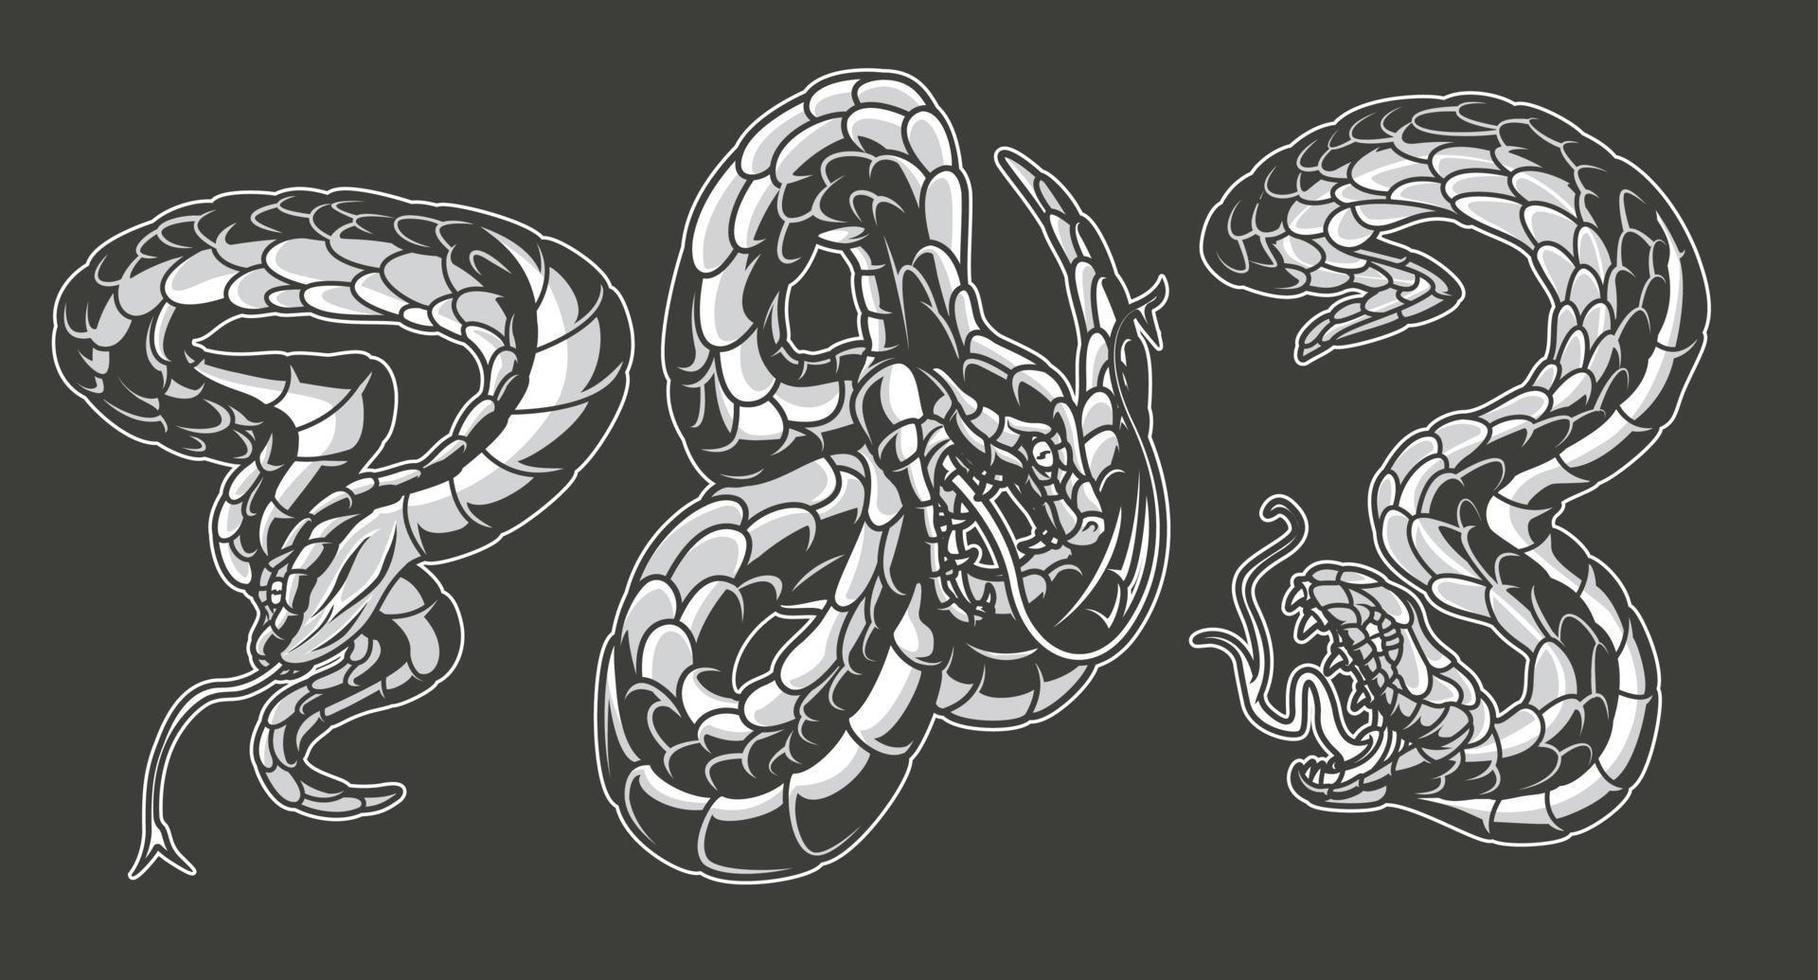 ilustrações vetoriais em preto e branco de cobras vetor